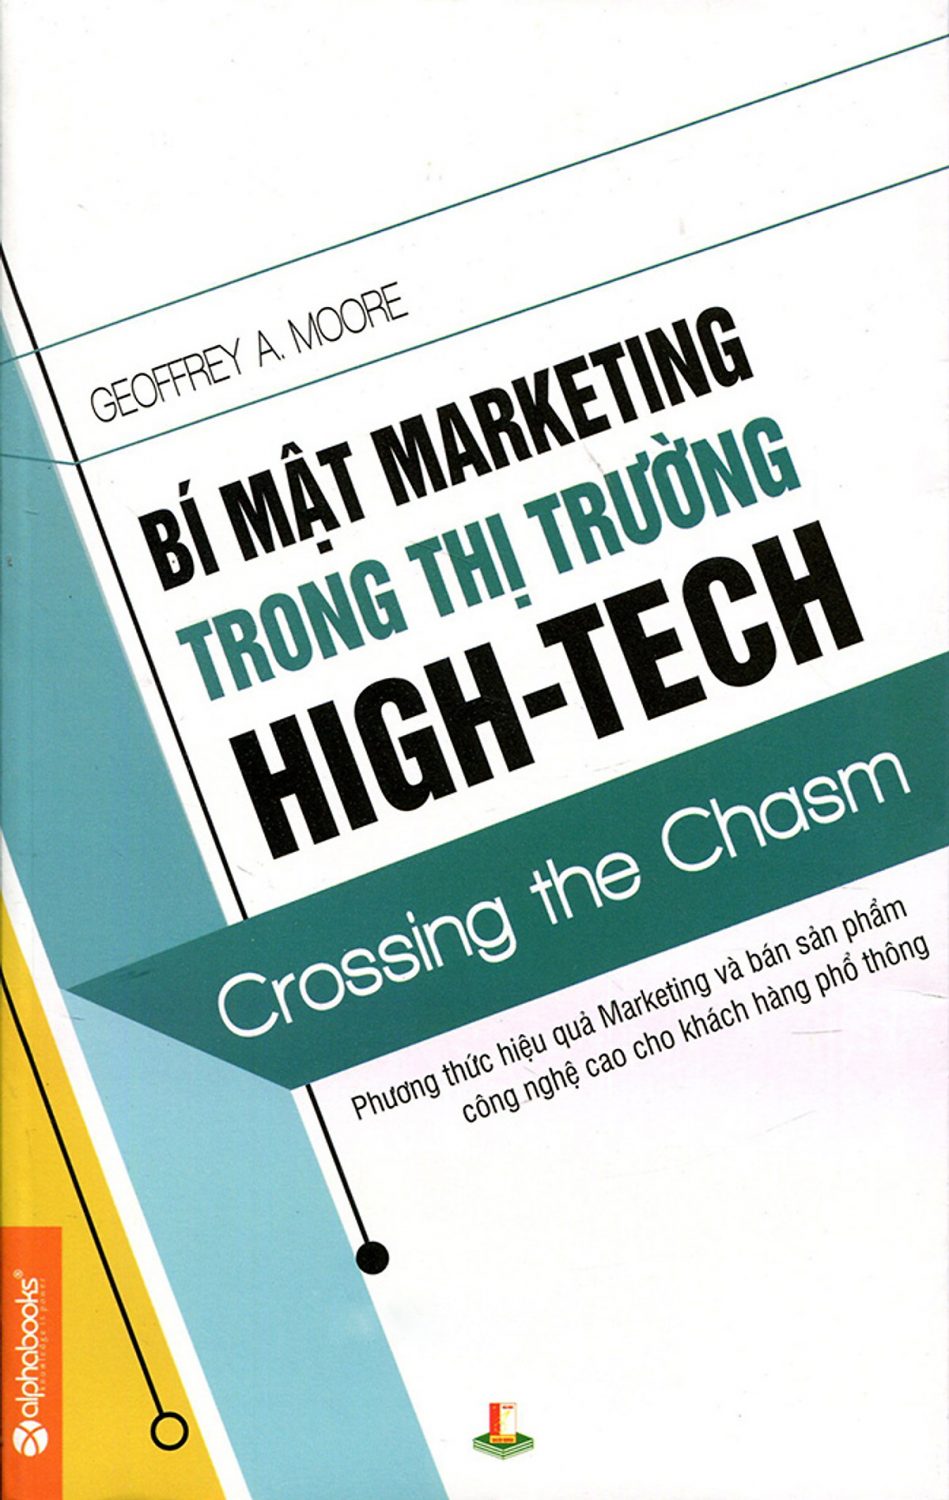 Bi Mat Marketing Trong Thi Truong High Tech Scaled